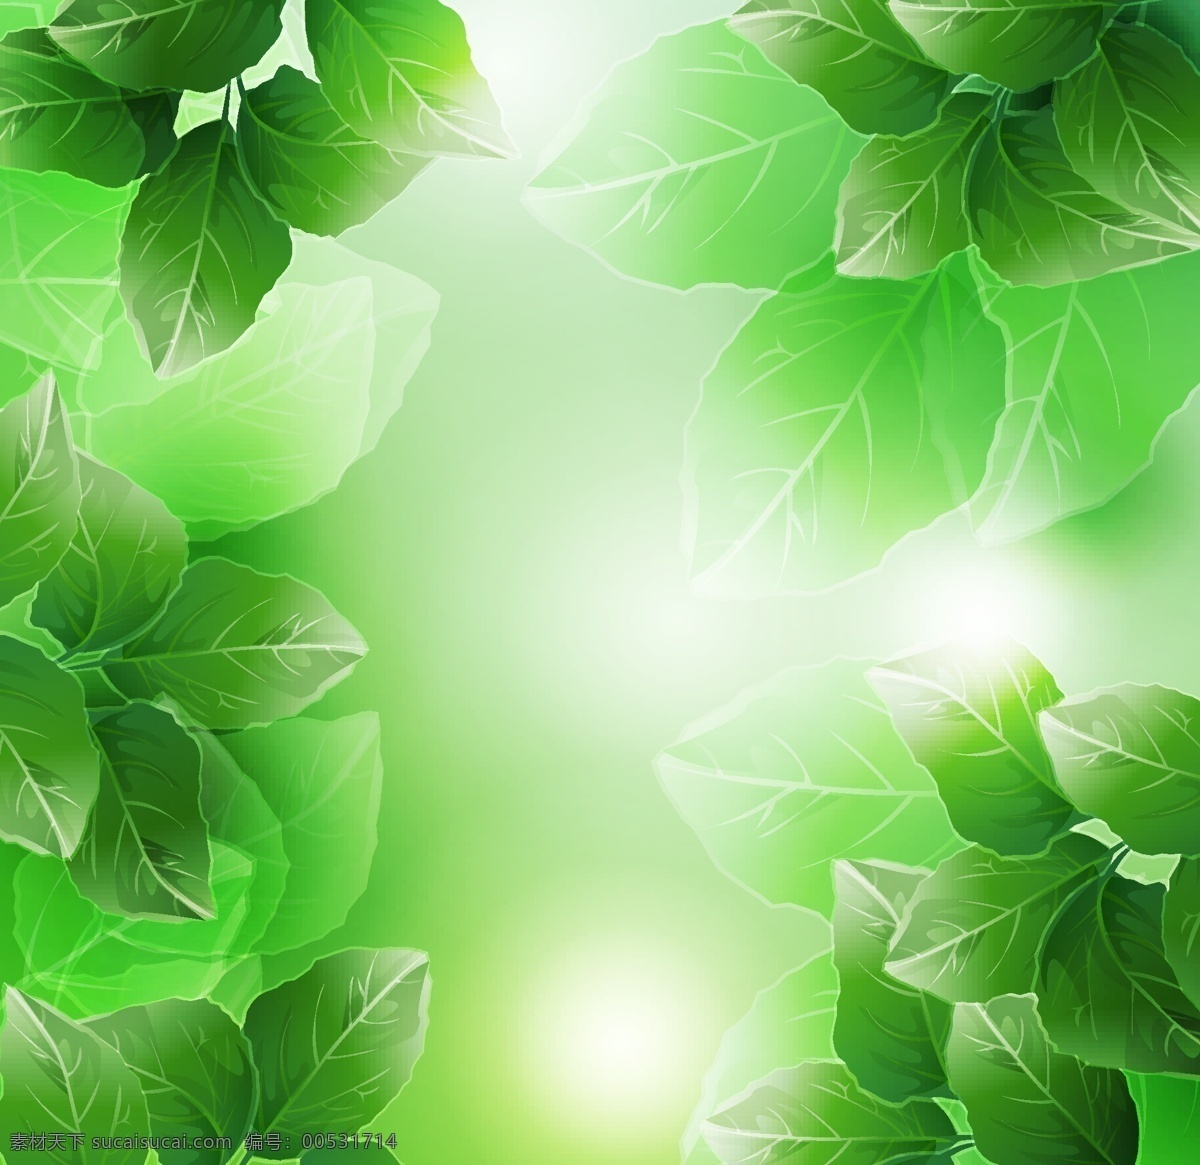 矢量 梦幻 植物 光晕 绿叶 背景 春意 光斑 矢量素材 树叶 矢量图 其他矢量图